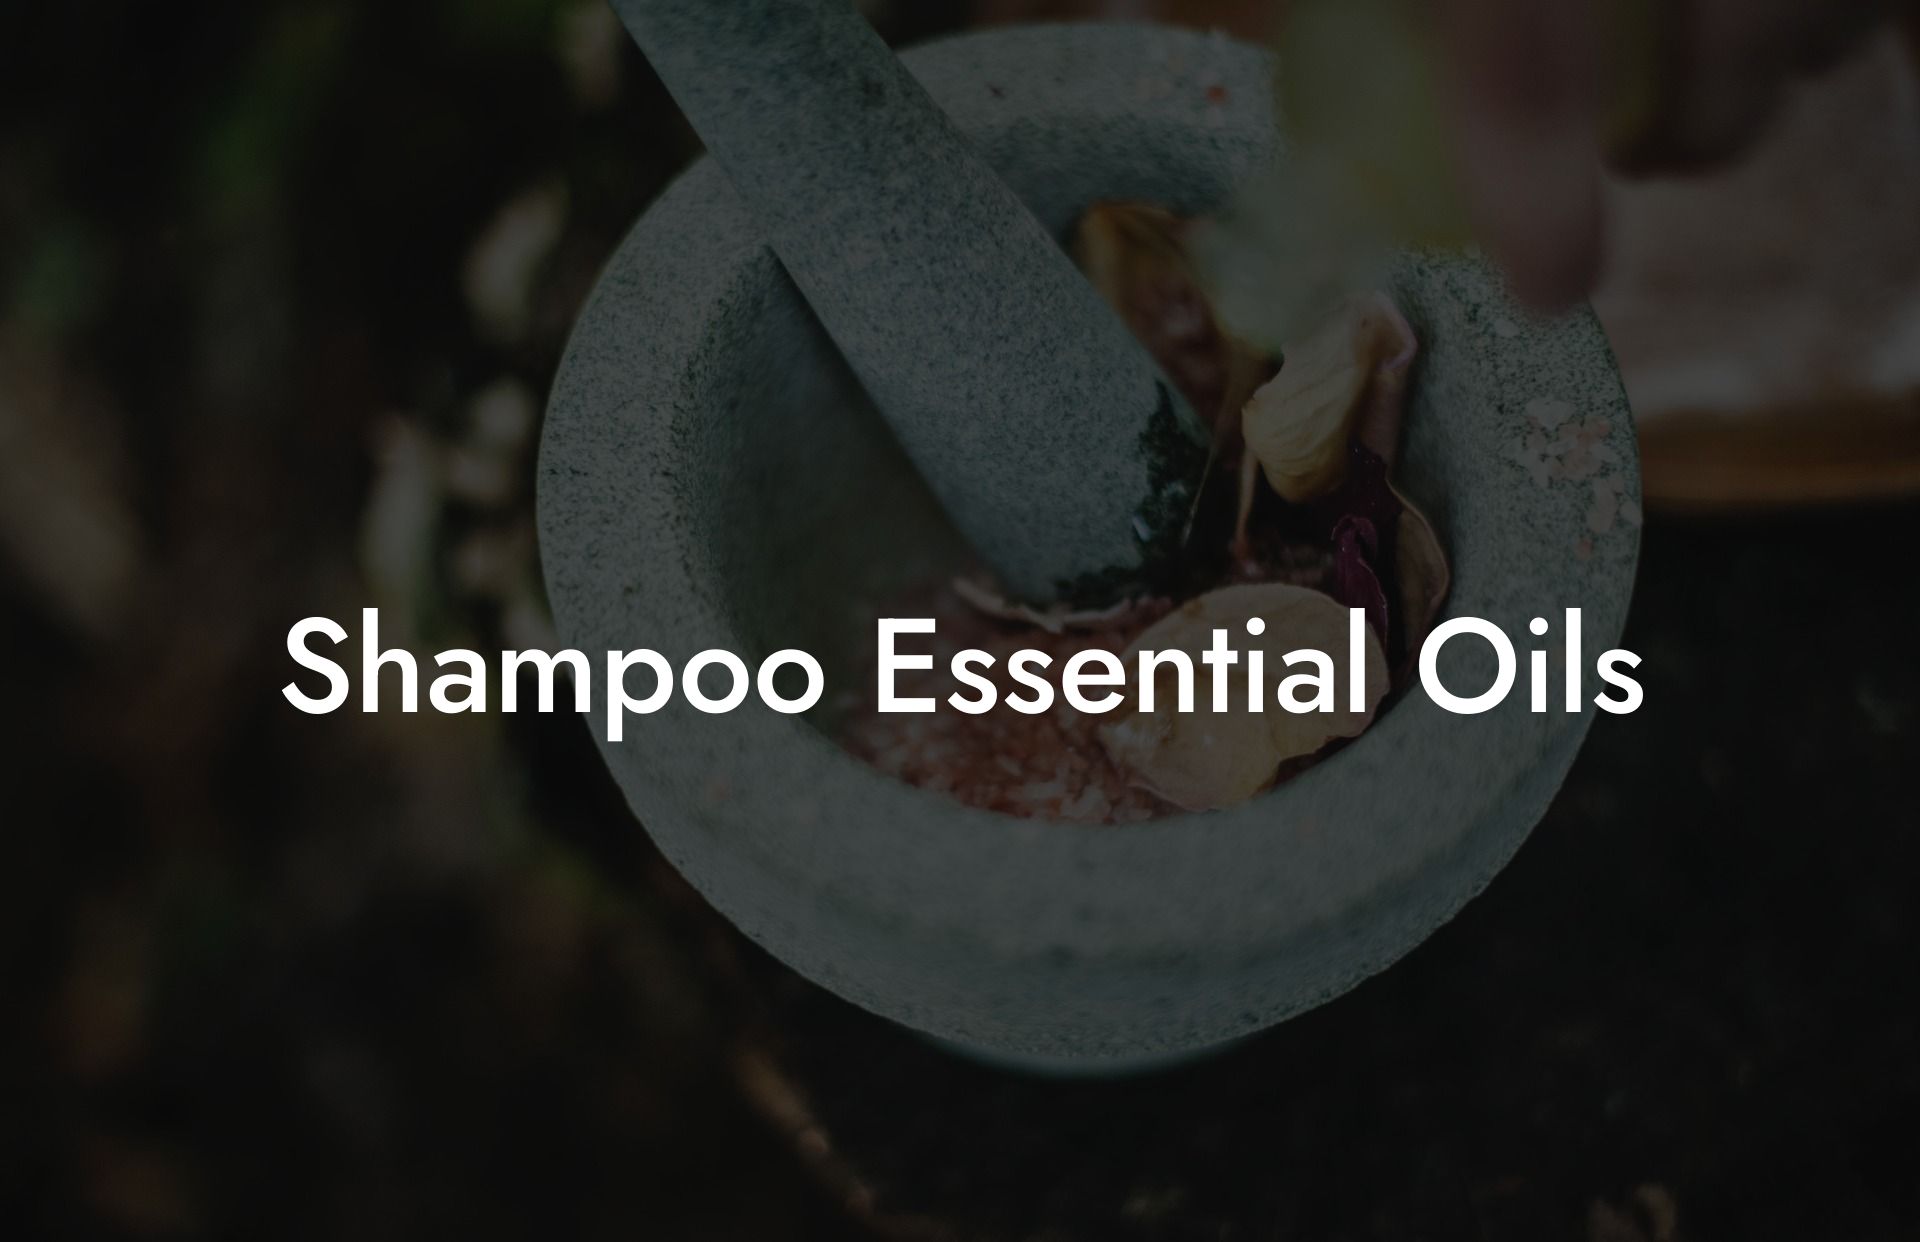 Shampoo Essential Oils